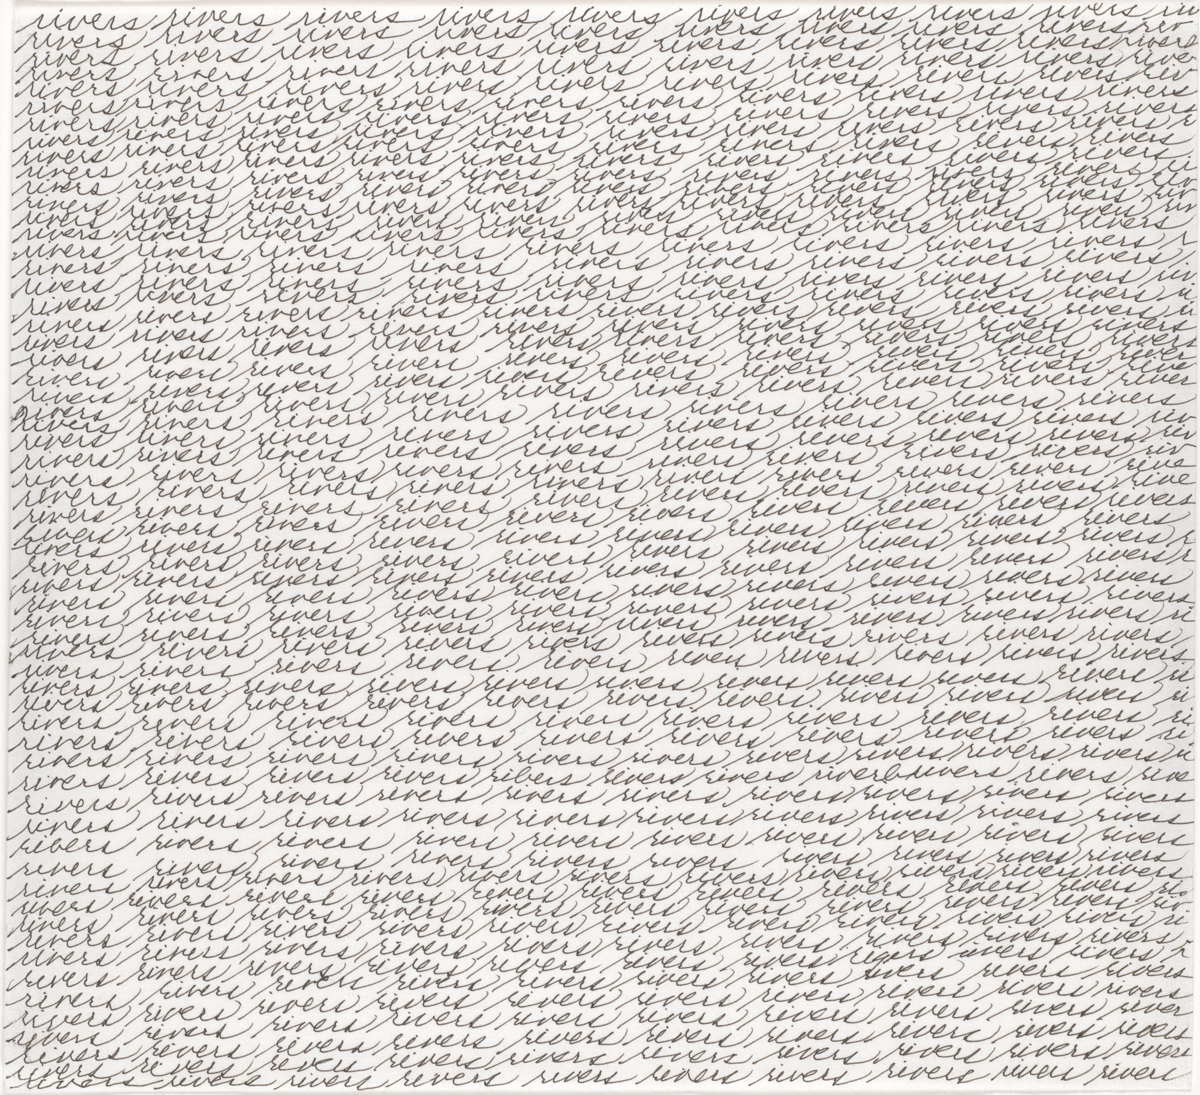 Maren Hassinger, Rivers, 2007. Tinta sobre papel. Enmarcado: 14 ¼ x 13 ¼ x 1 ¼ pulgadas. Cortesía del Artista.